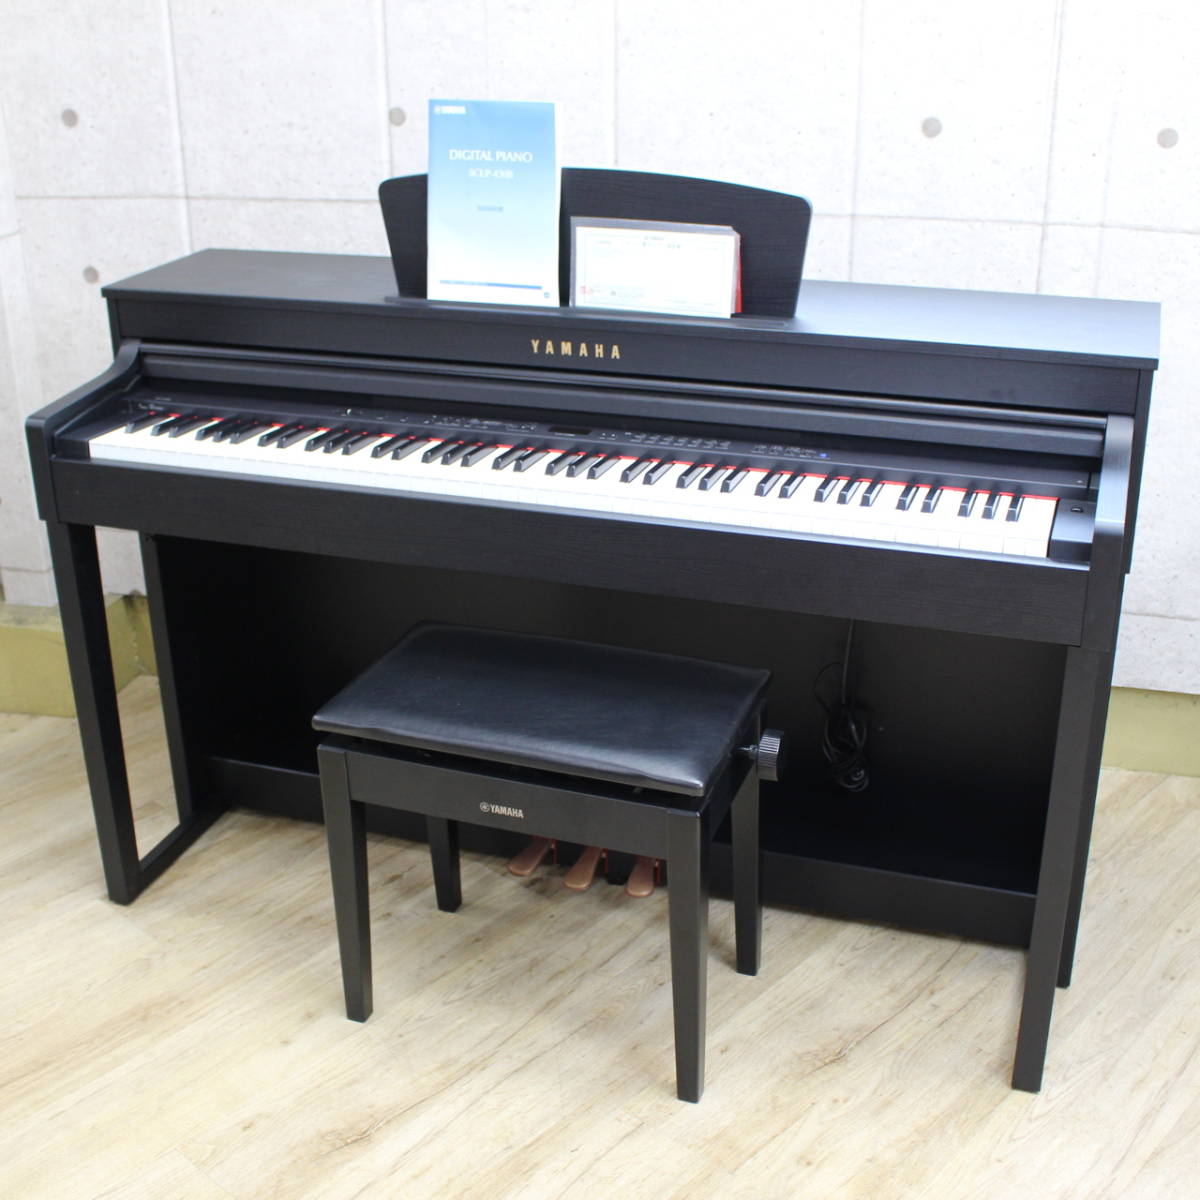 ヤマハ電子ピアノ クラビノーバ SCLP-430B 2011年製 88鍵